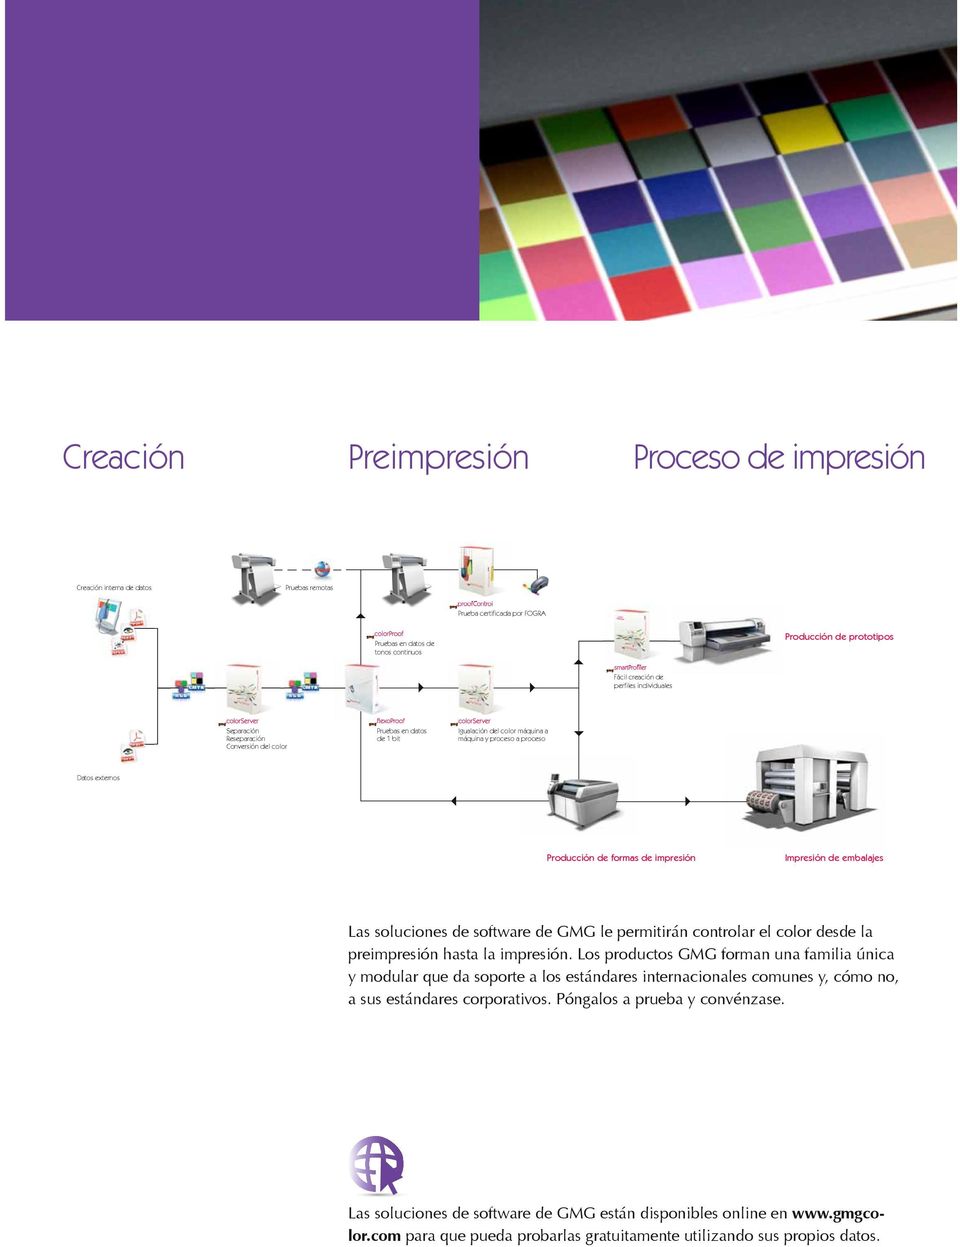 Impresión de embalajes Las soluciones de software de GMG le permitirán controlar el color desde la preimpresión hasta la impresión.